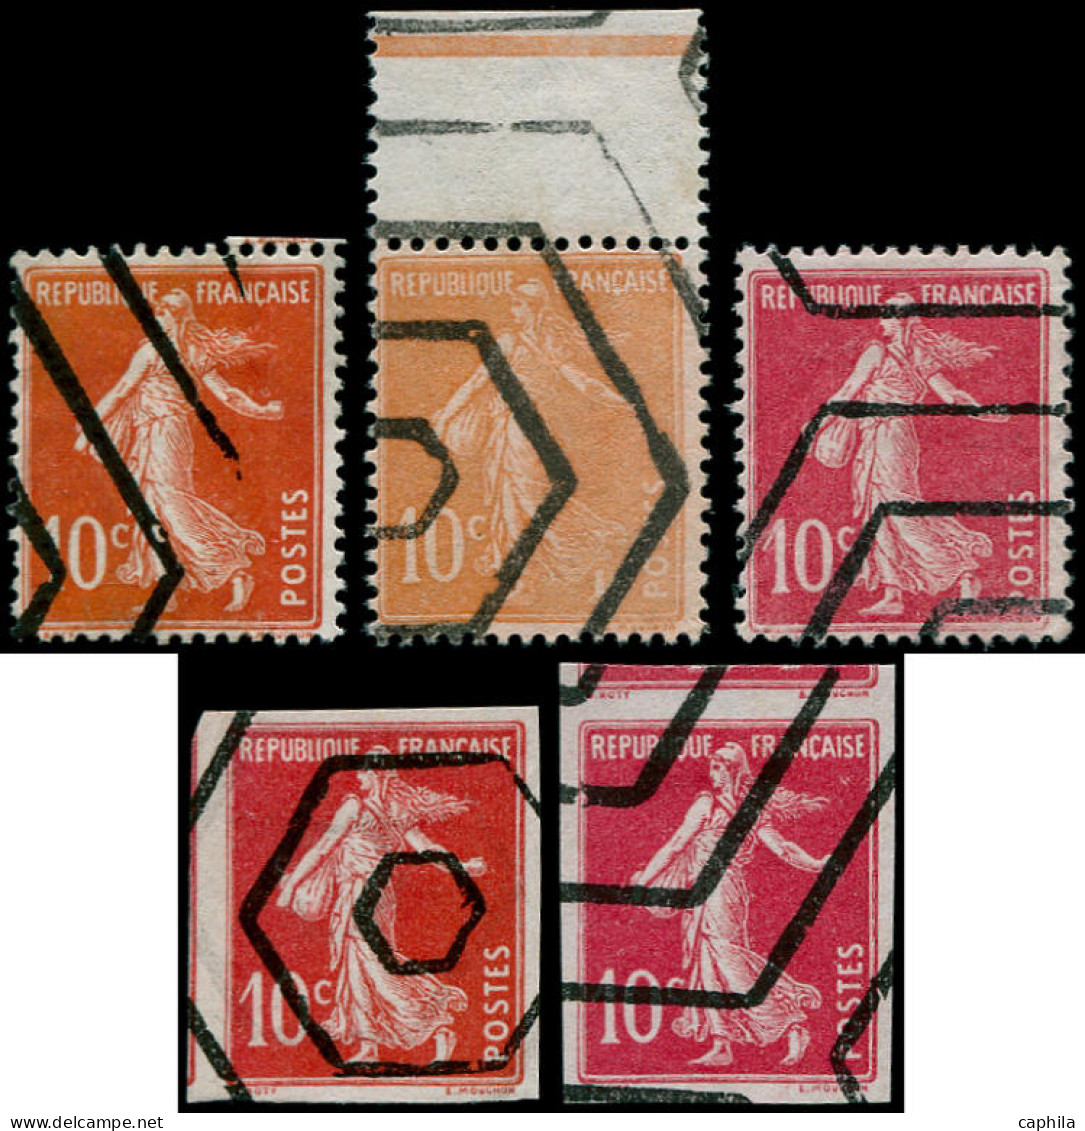 (*) FRANCE - Poste - 138, Série De 5 Timbres Dentelés Ou Non Dentelés, Couleurs Diverses, Para Oblitérés Hexagones - Unused Stamps